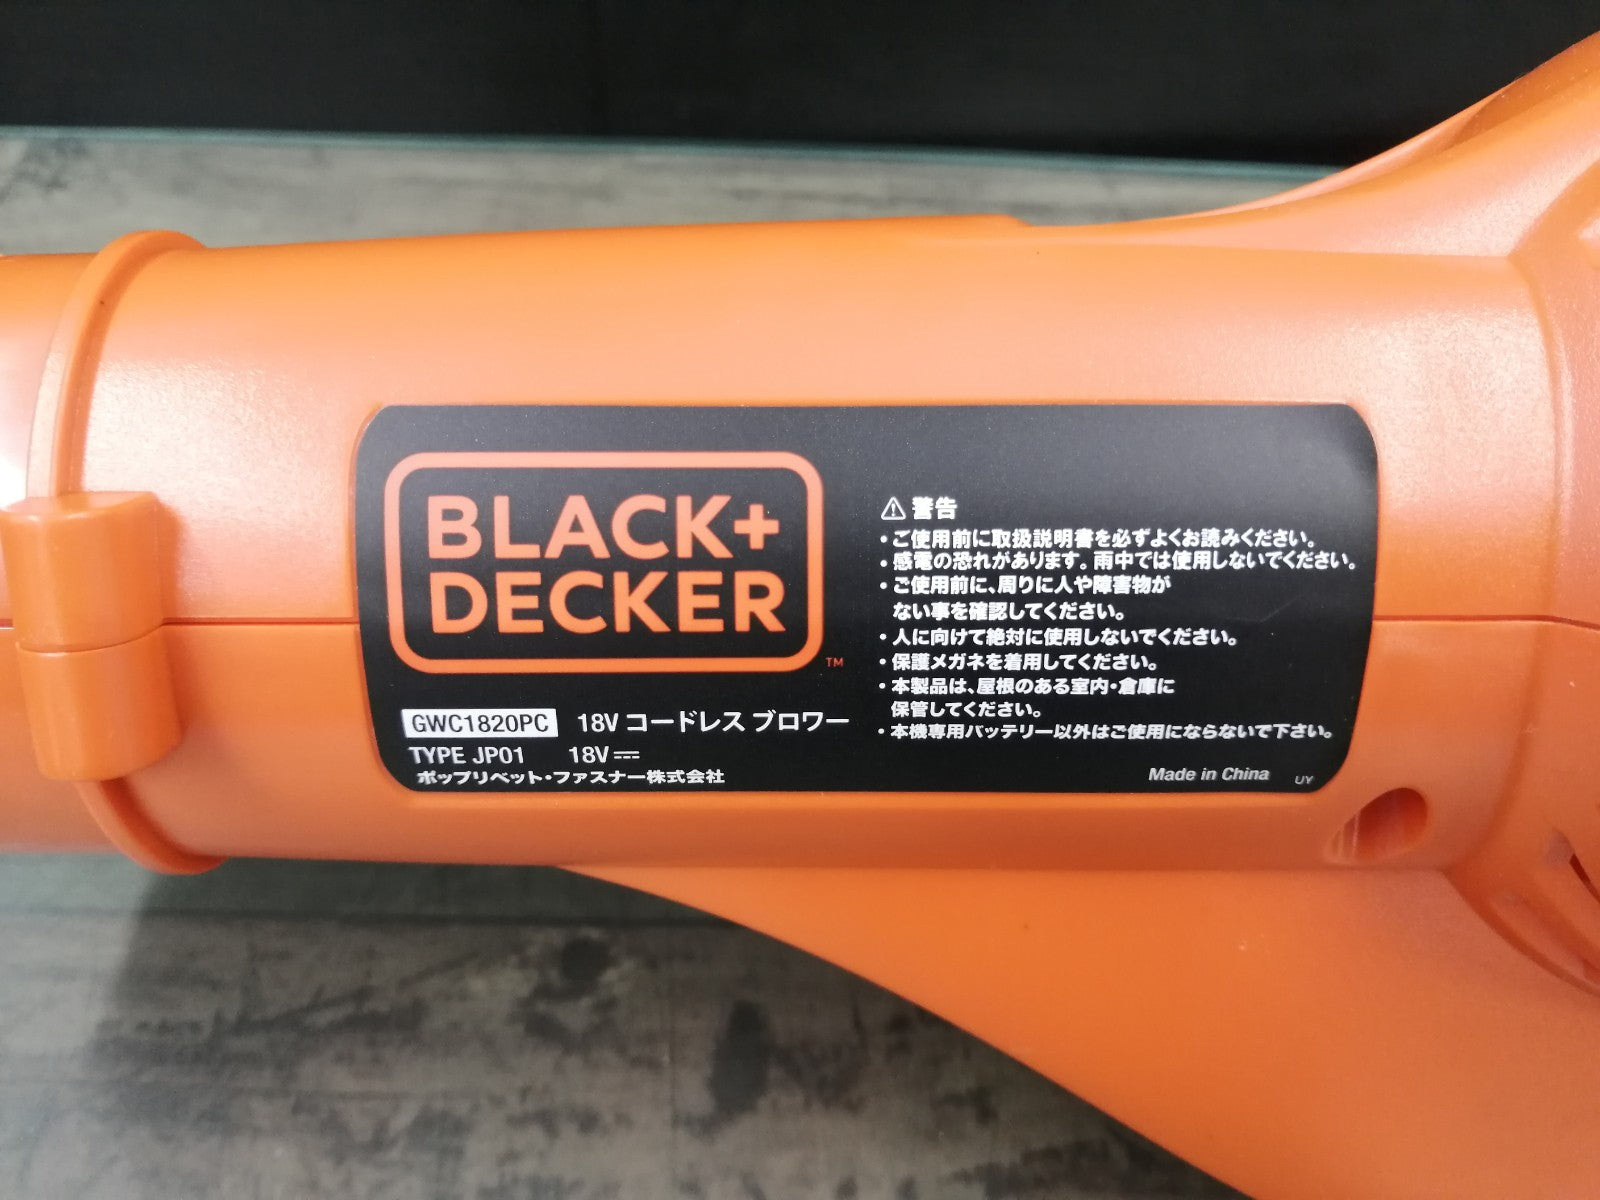 ブラックアンドデッカー GWC1820PC コードレスブロワー ブラックアンドデッカー  オレンジ - 1